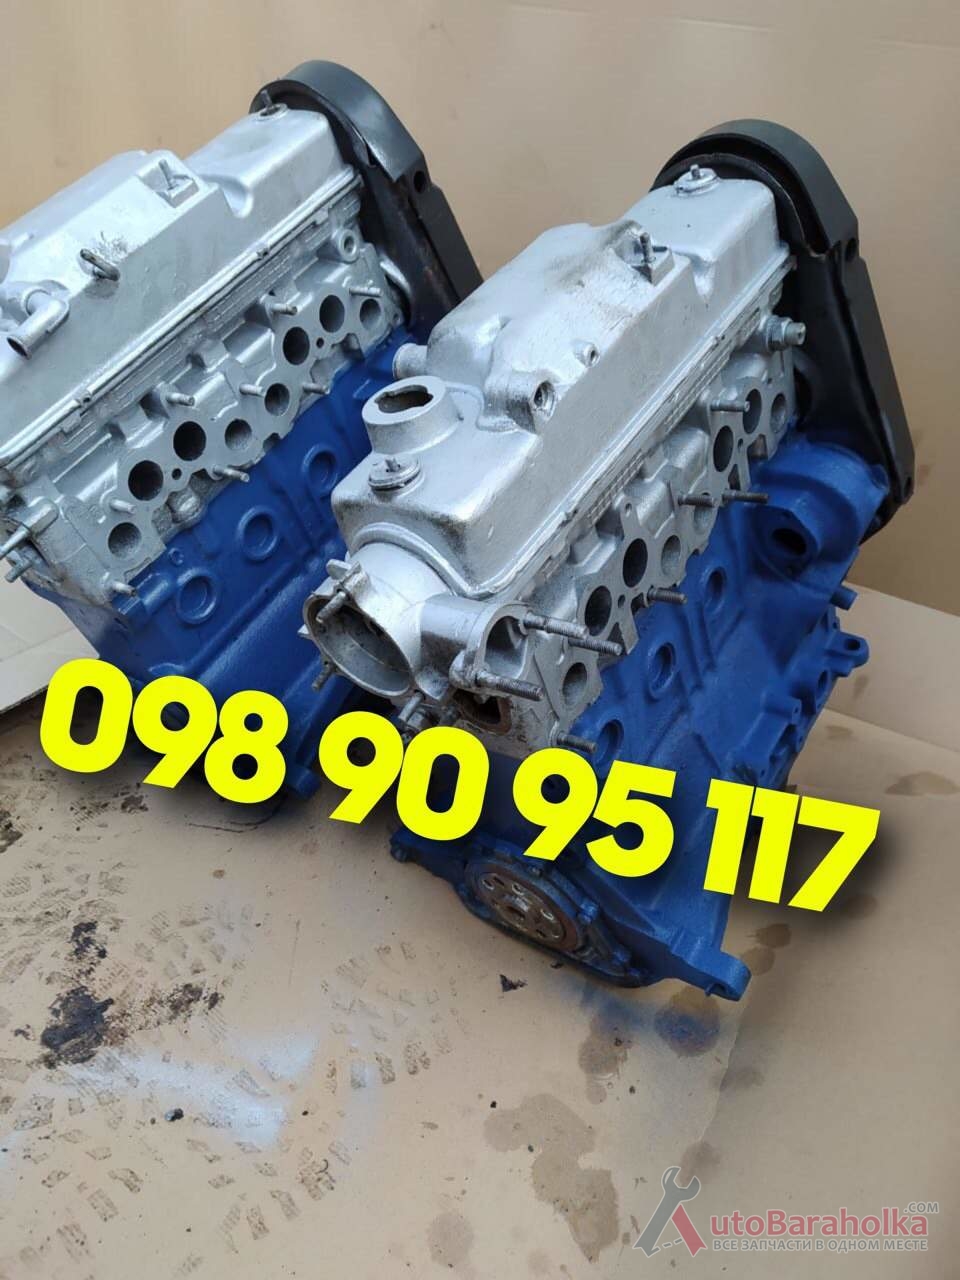 Продам Двигатель Мотор ДВС ВАЗ 2108 2109 2110 2113 2115 Гарантия Одесса